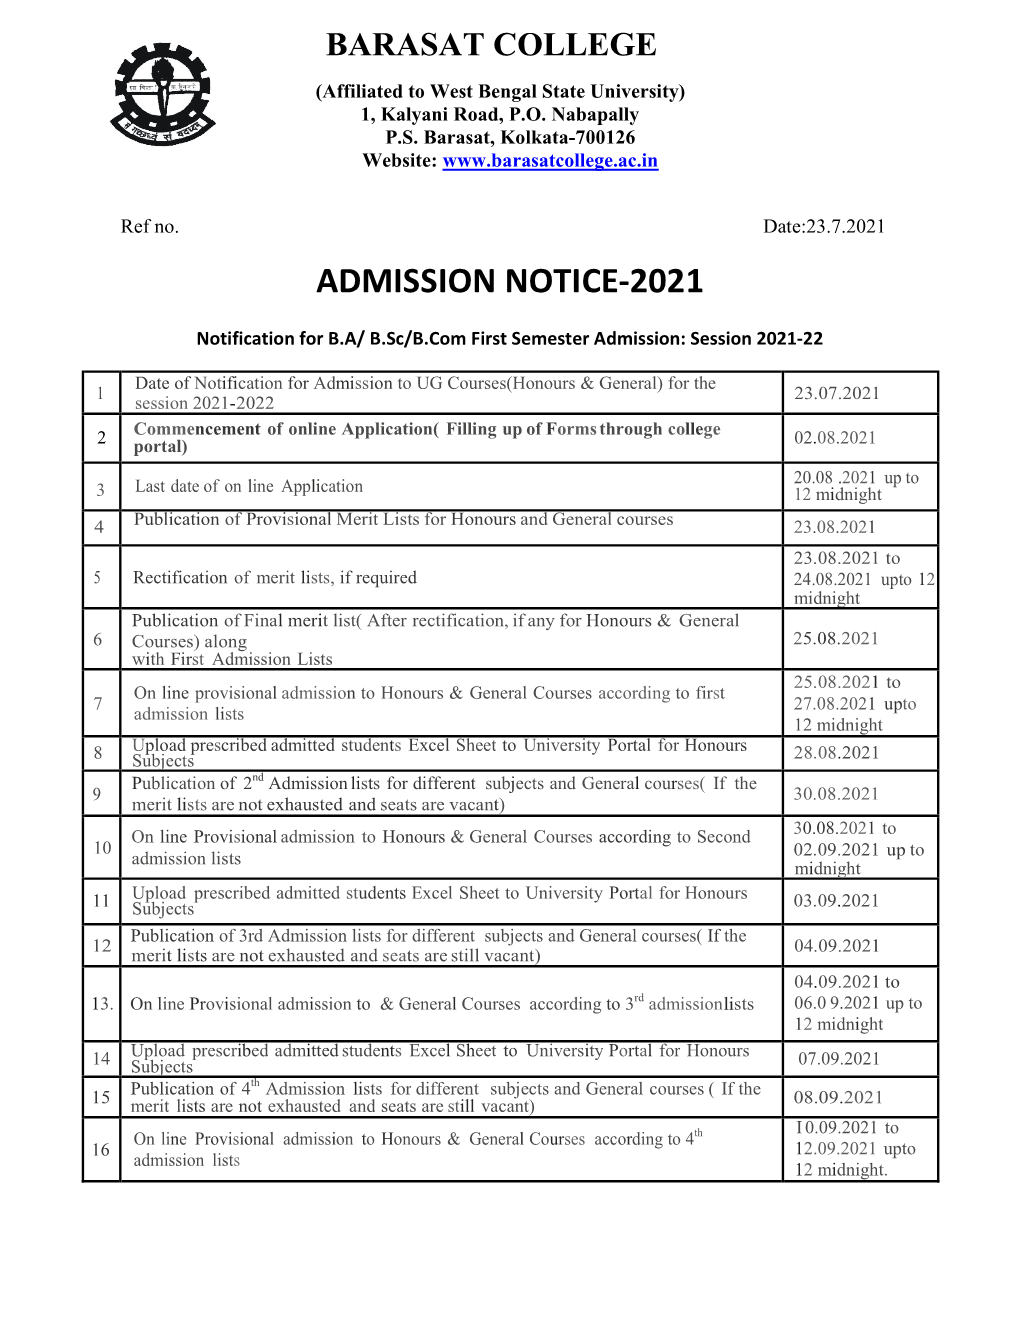 Admission Notice-2021